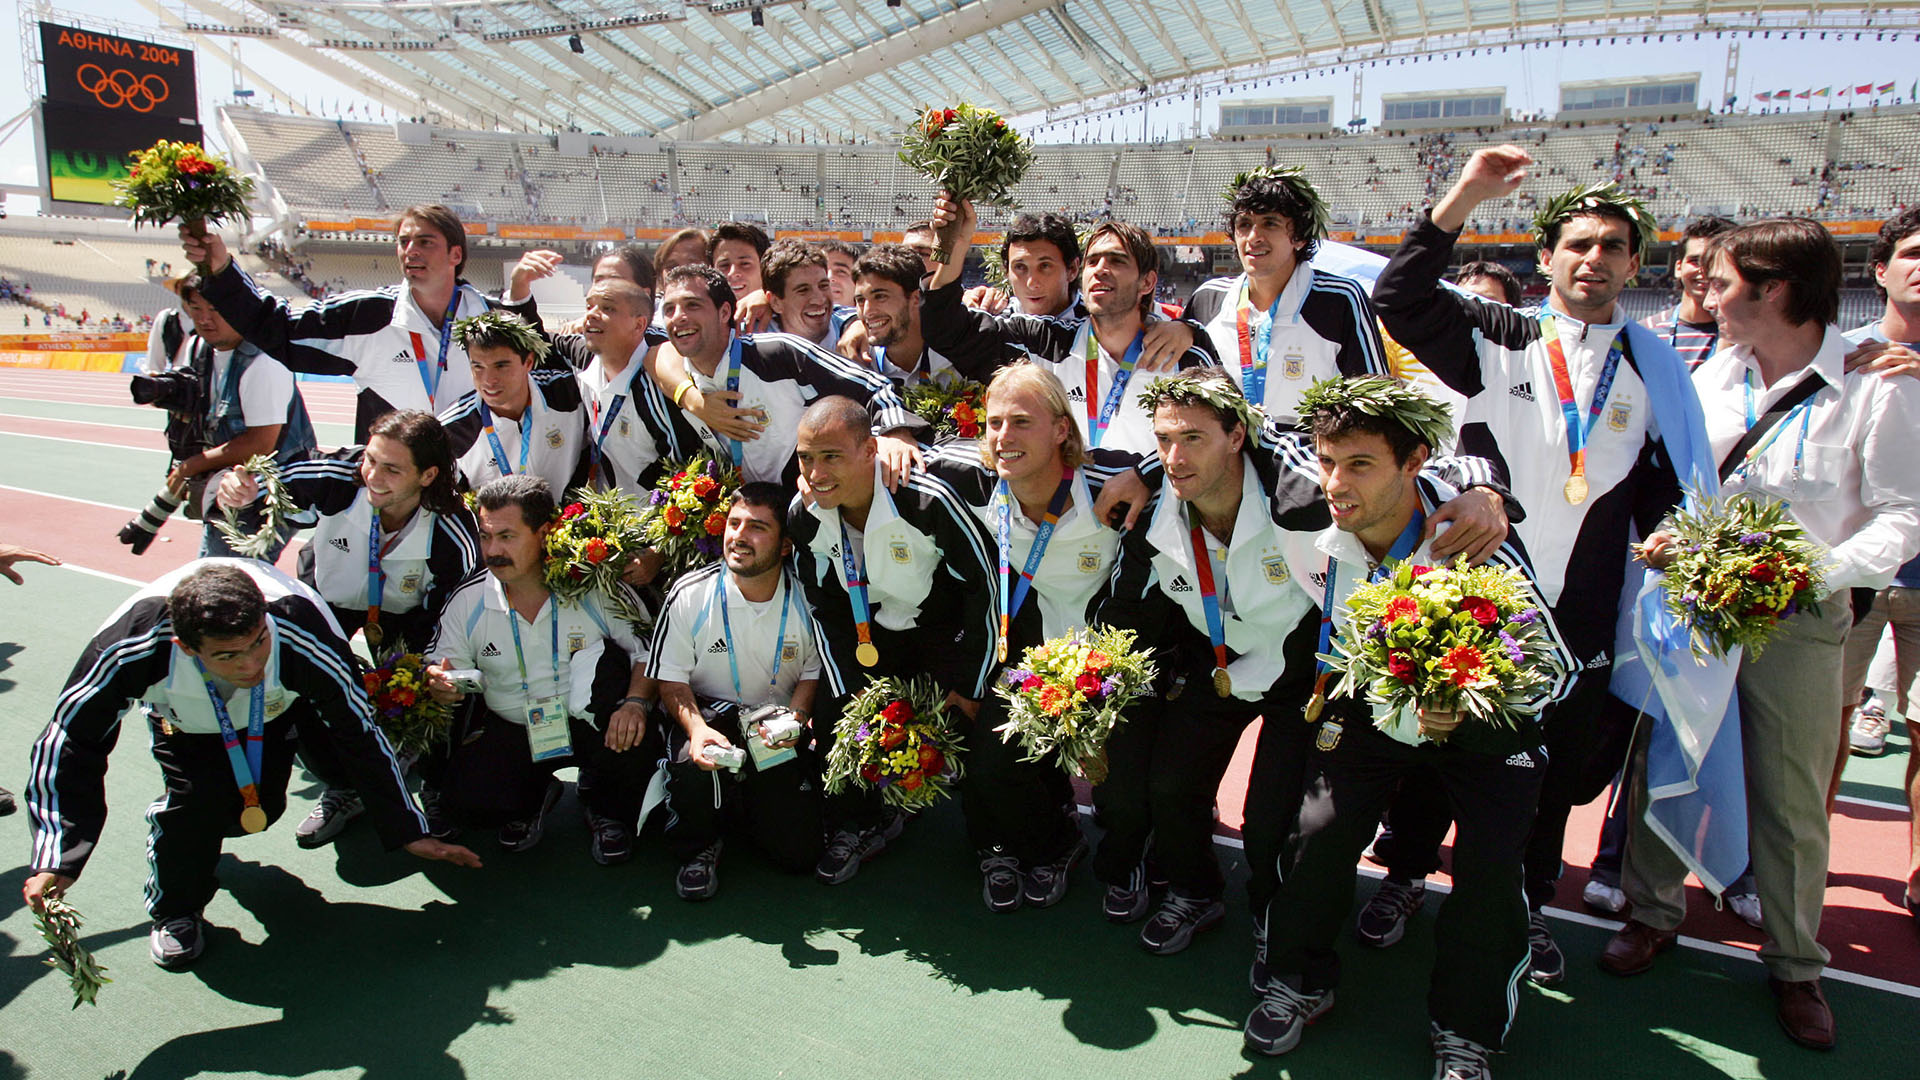 La albiceleste se colgó la medalla de oro en los Juegos Olímpicos de Atenas 2004 (Foto: AFP/Odd Andersen)